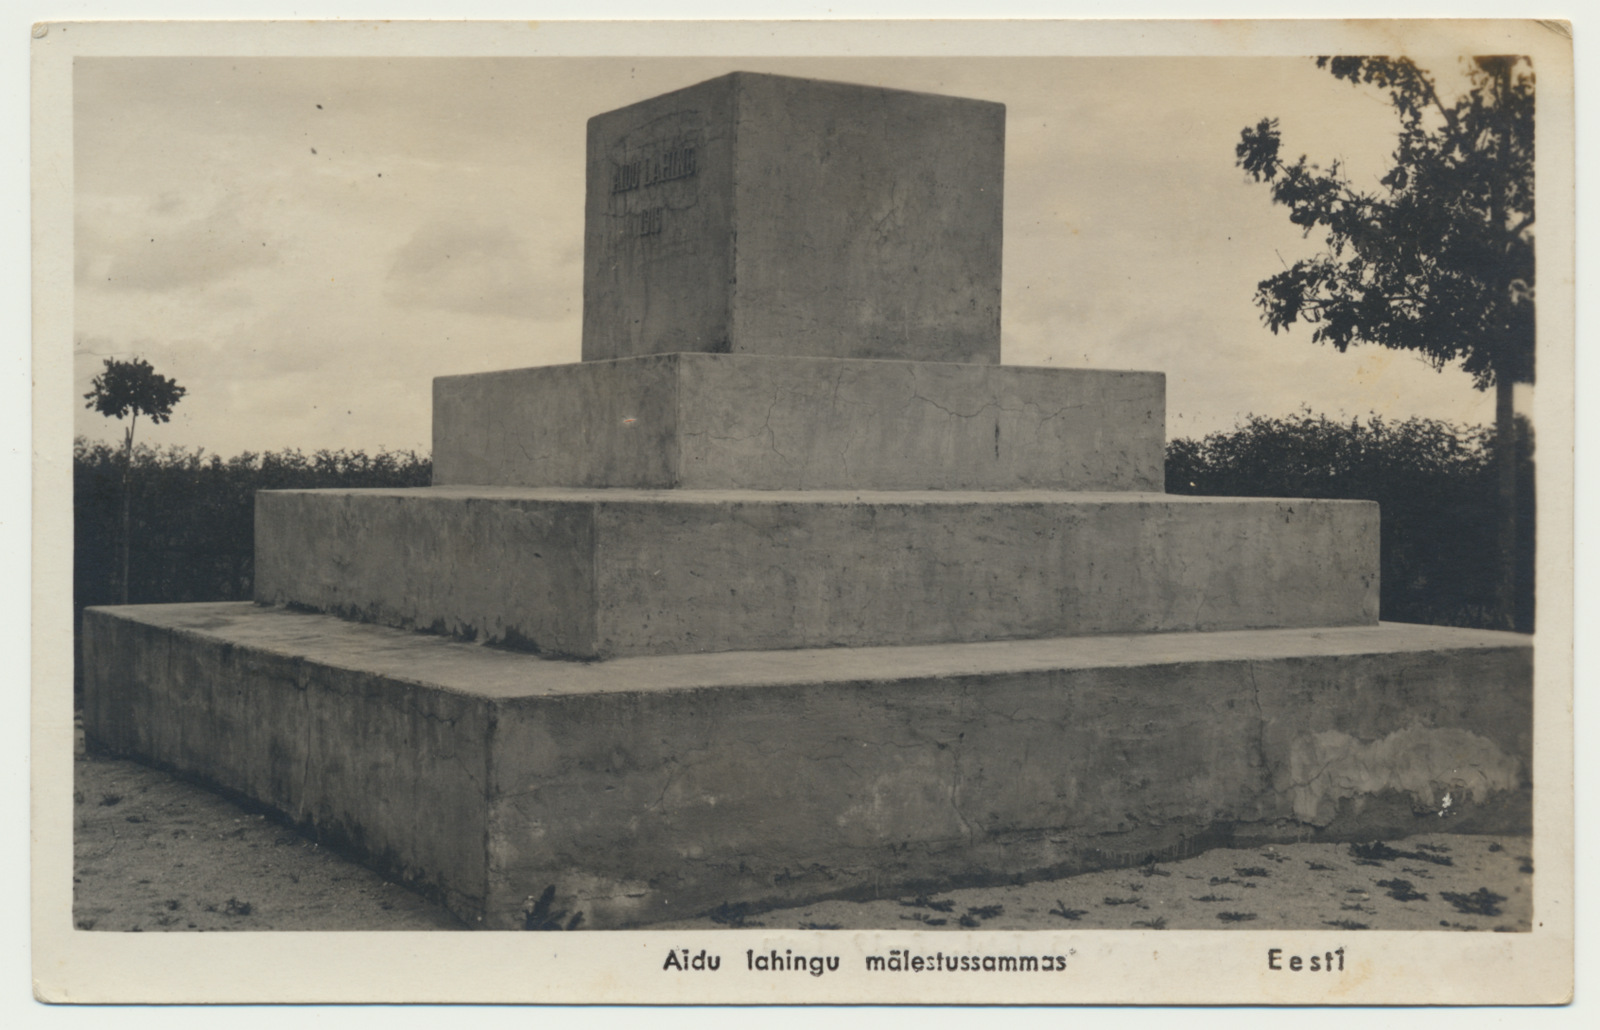 foto, Aidu lahingu mälestussammas, u 1935